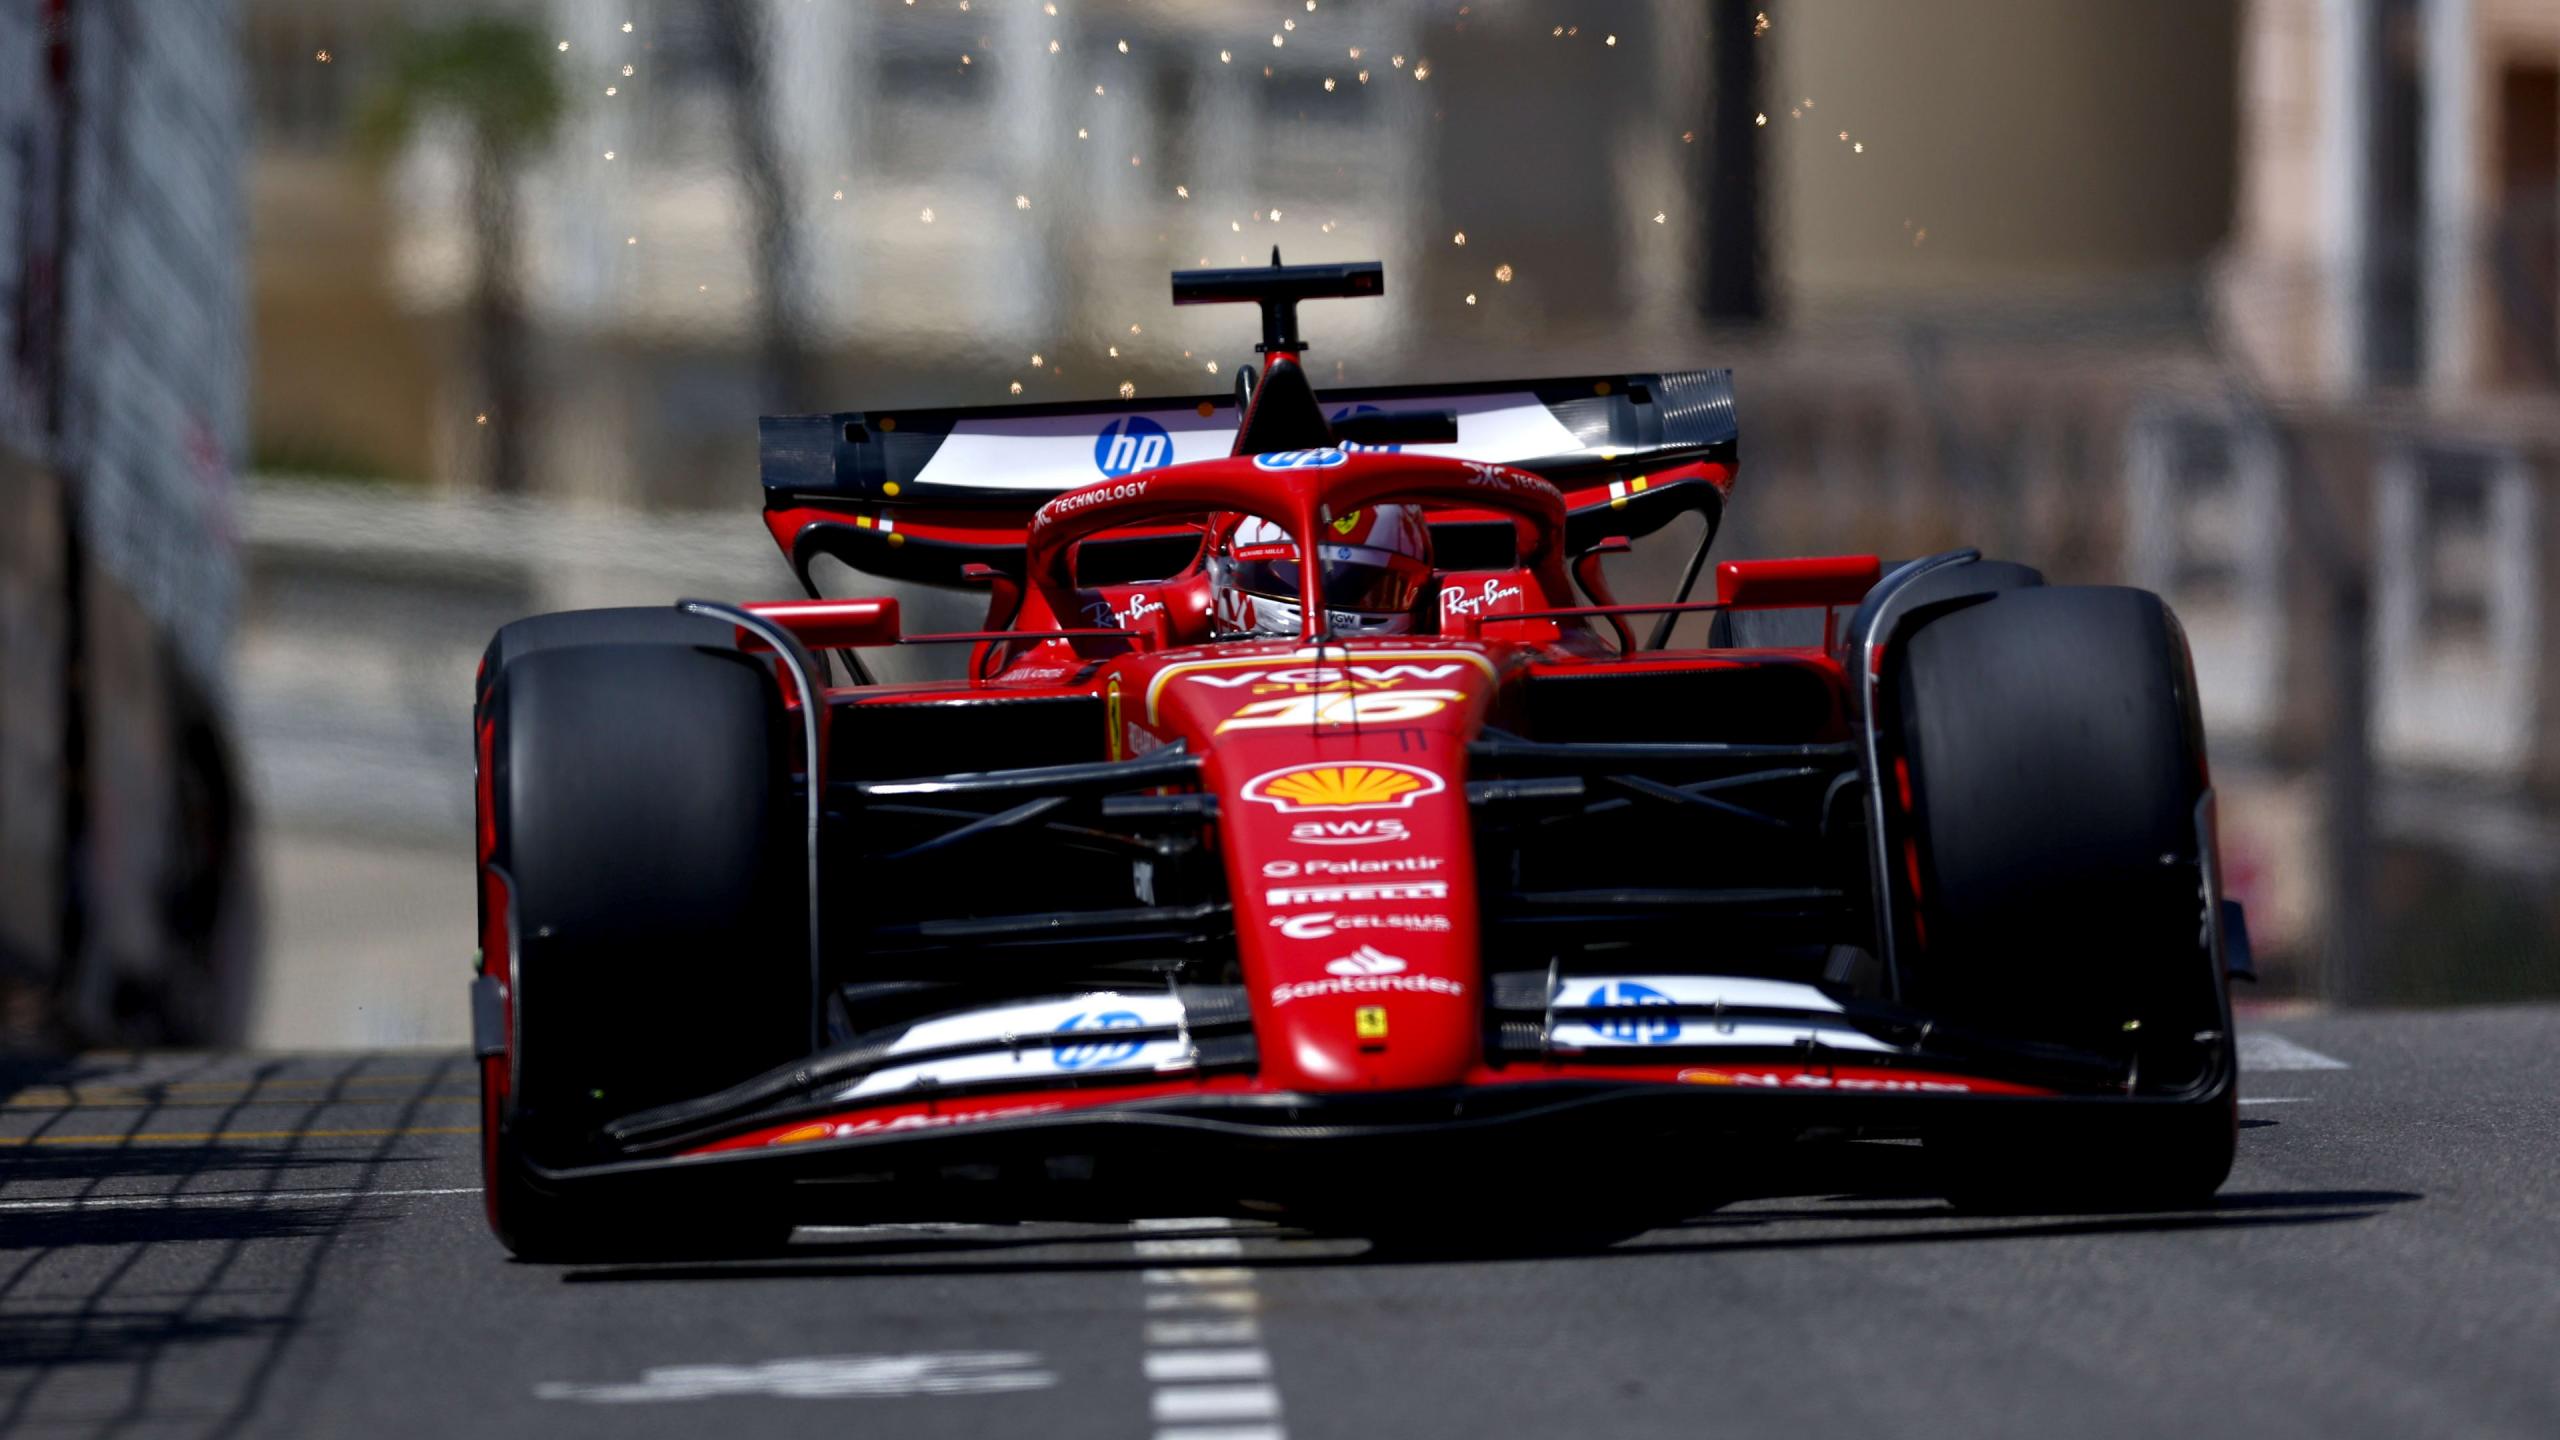 Troisième pole position pour Leclerc à Monaco, devant Piastri et Sainz - Crédit photo : F1